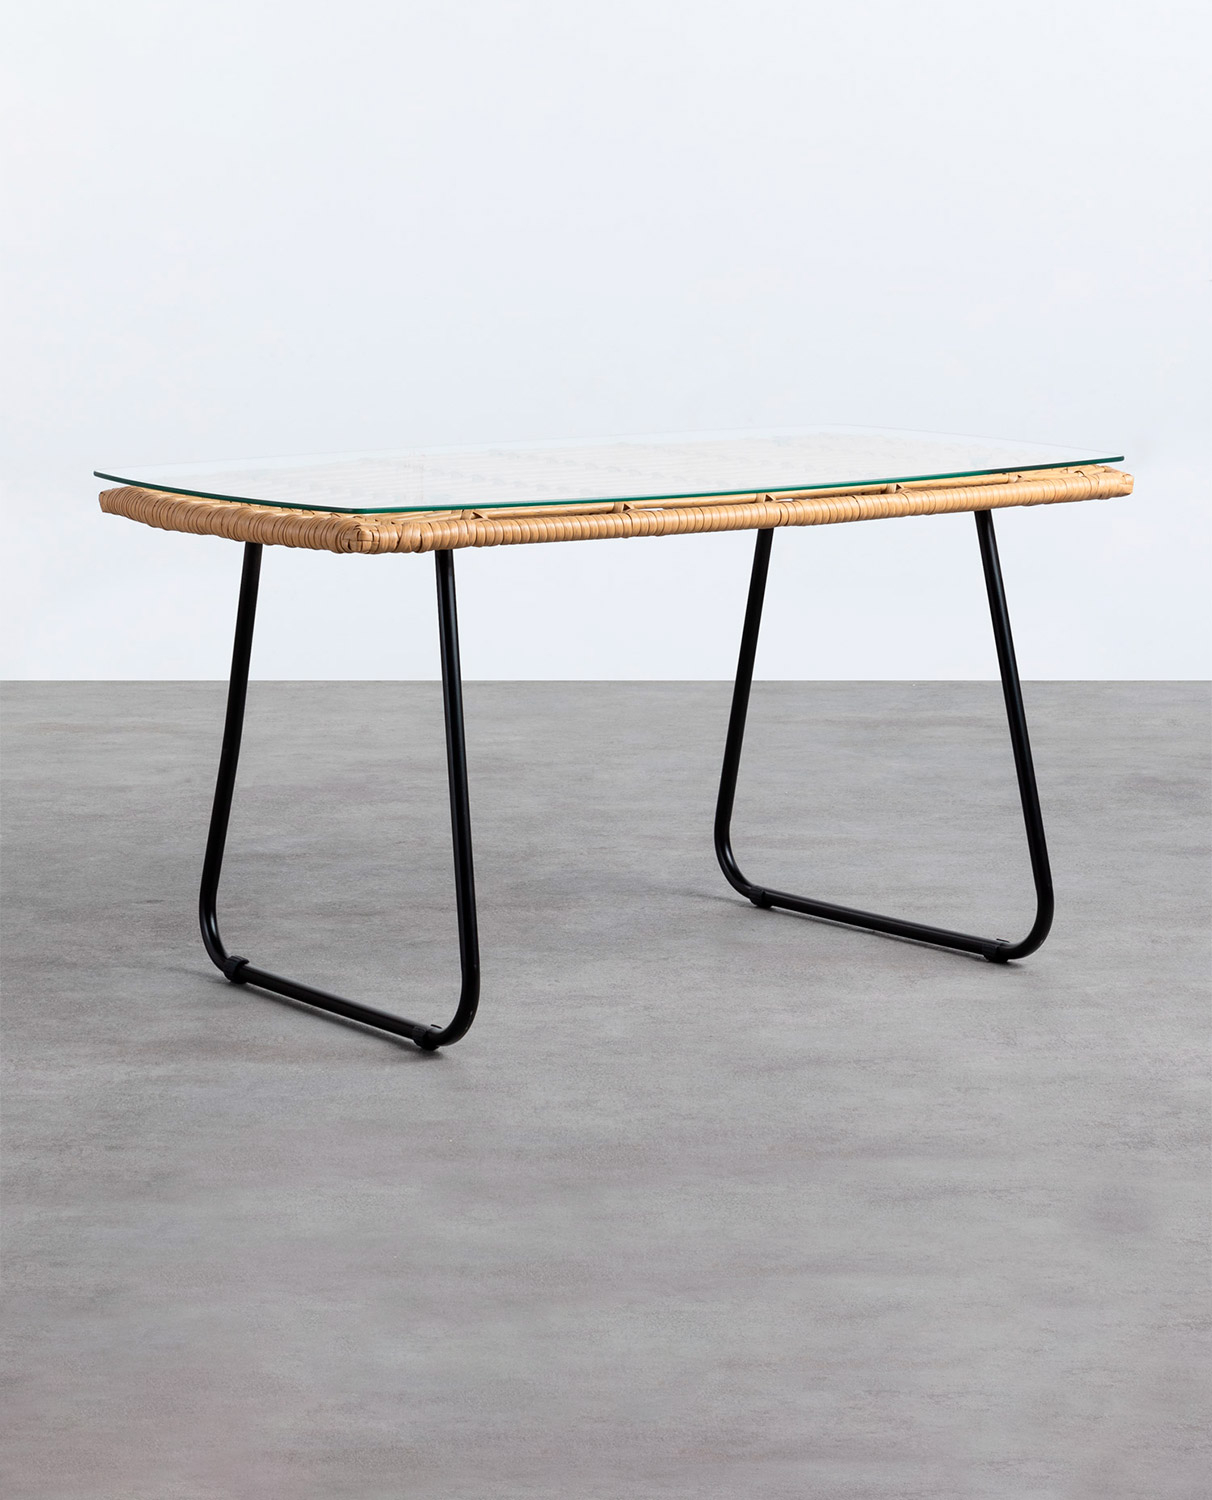 Tavolino Rettangolare in Rattan Sintetico e Cristallo (90x50 cm) Balar, immagine della galleria 1